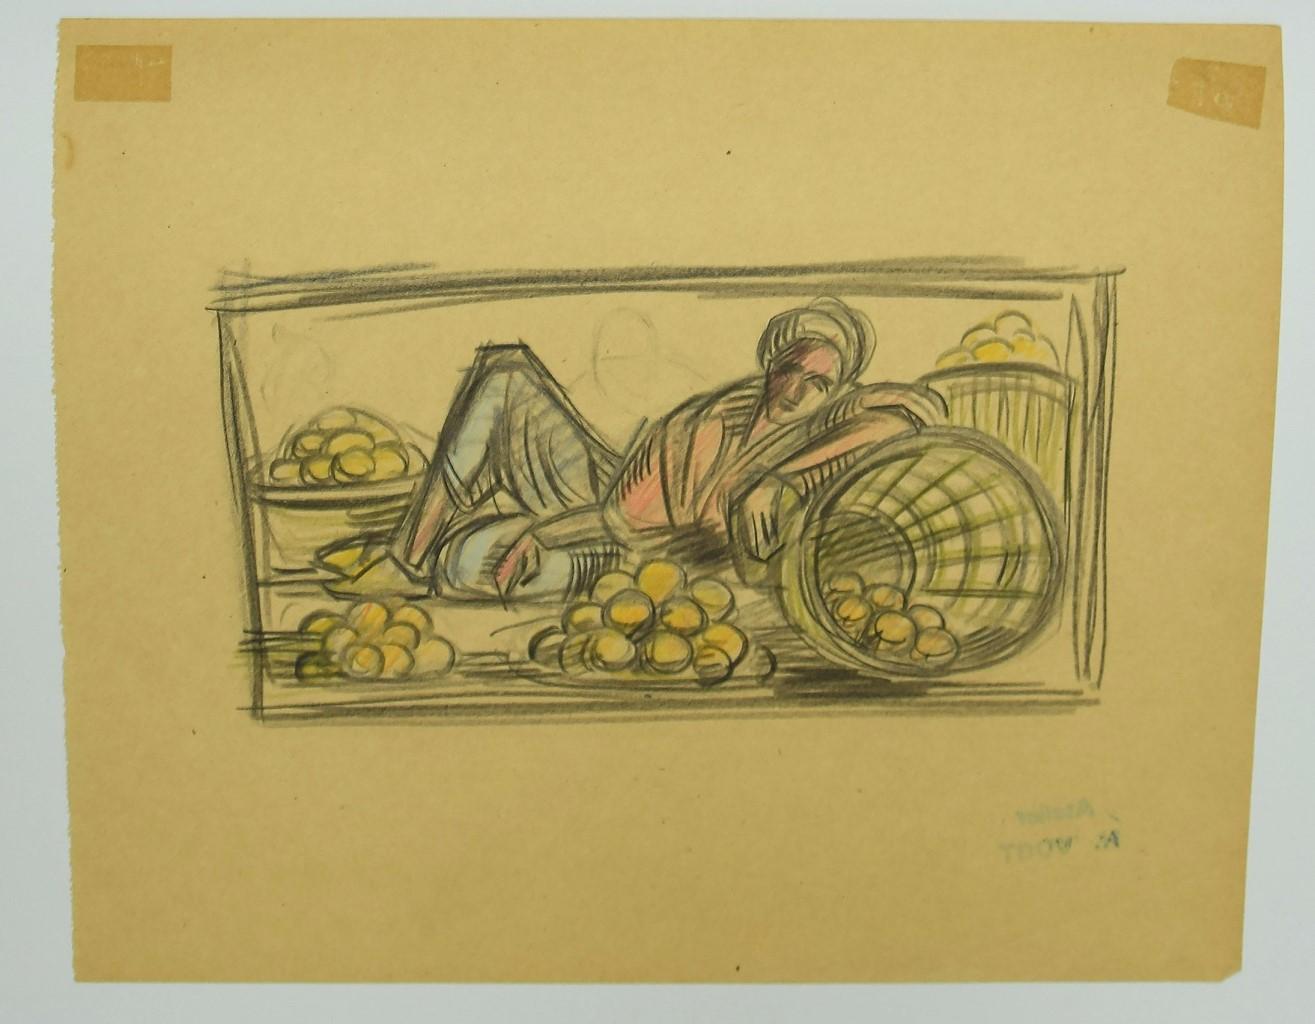 Marokko ist eine Original-Pastell- und Bleistiftzeichnung von Helen Vogt aus dem Jahr 1930. 

Der Erhaltungszustand ist sehr gut. 

Nicht unterzeichnet. 

Stempel des Künstlers auf der Rückseite.